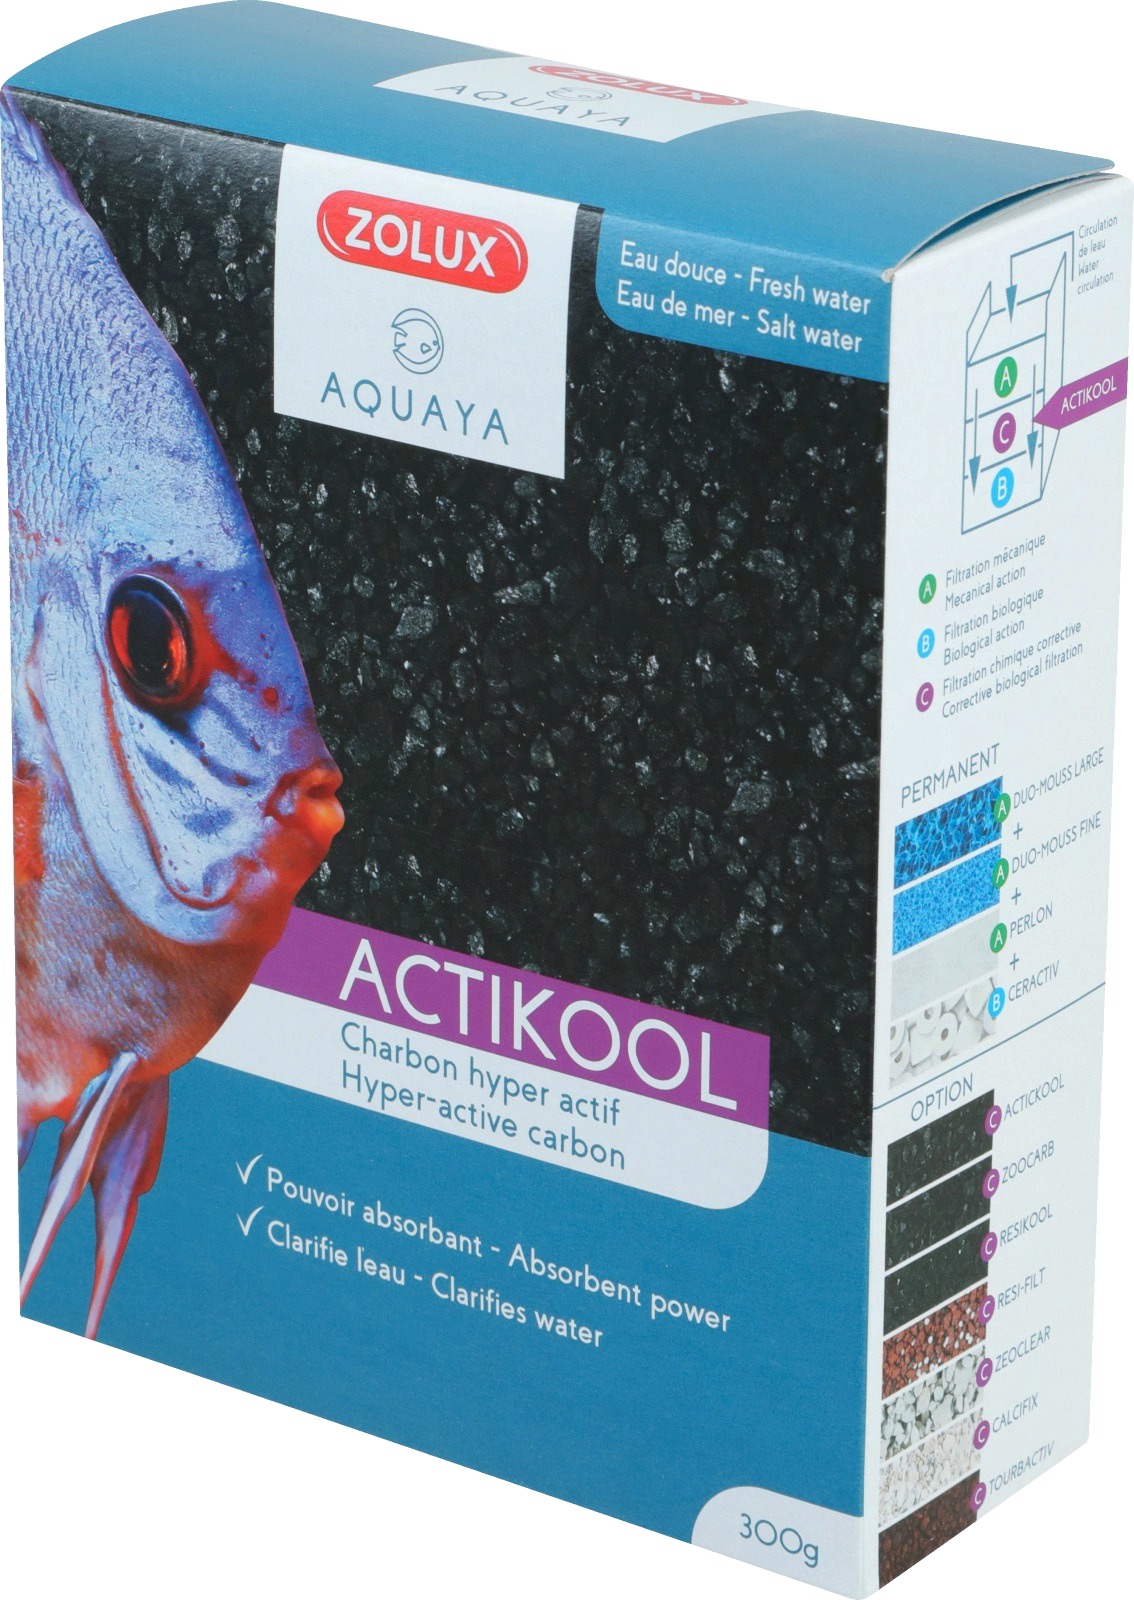 zolux-actikool-2-600-ml-charbon-super-actif-qui-clarifie-et-absorbe-les-toxines-en-aquarium-d-eau-douce-et-d-eau-de-mer